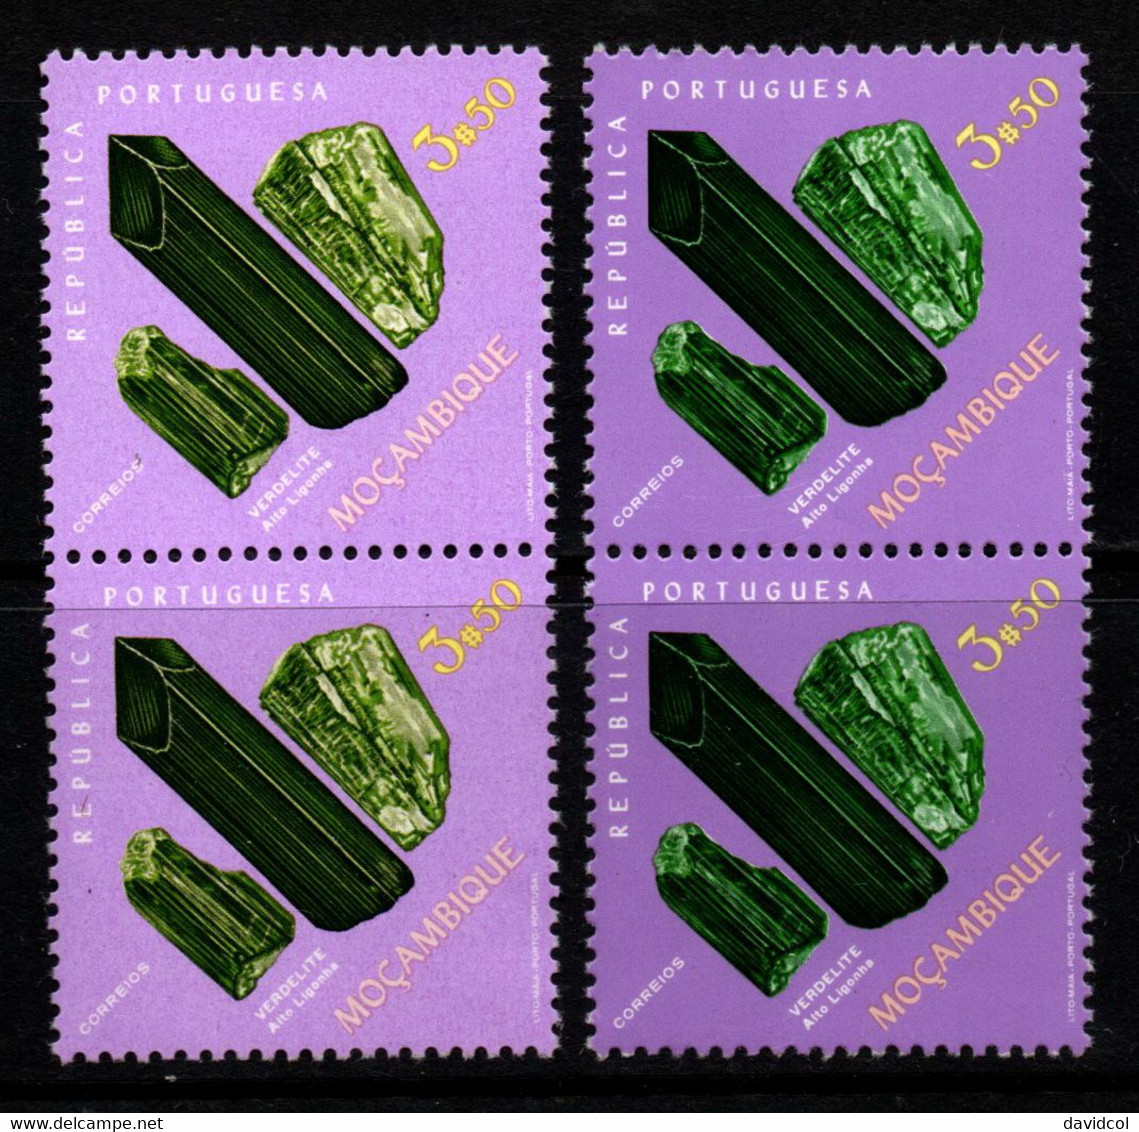 0353- MOZAMBIQUE 1971- MINERALS - VERDELITE - PAIR COLOR VARIETY - Minéraux